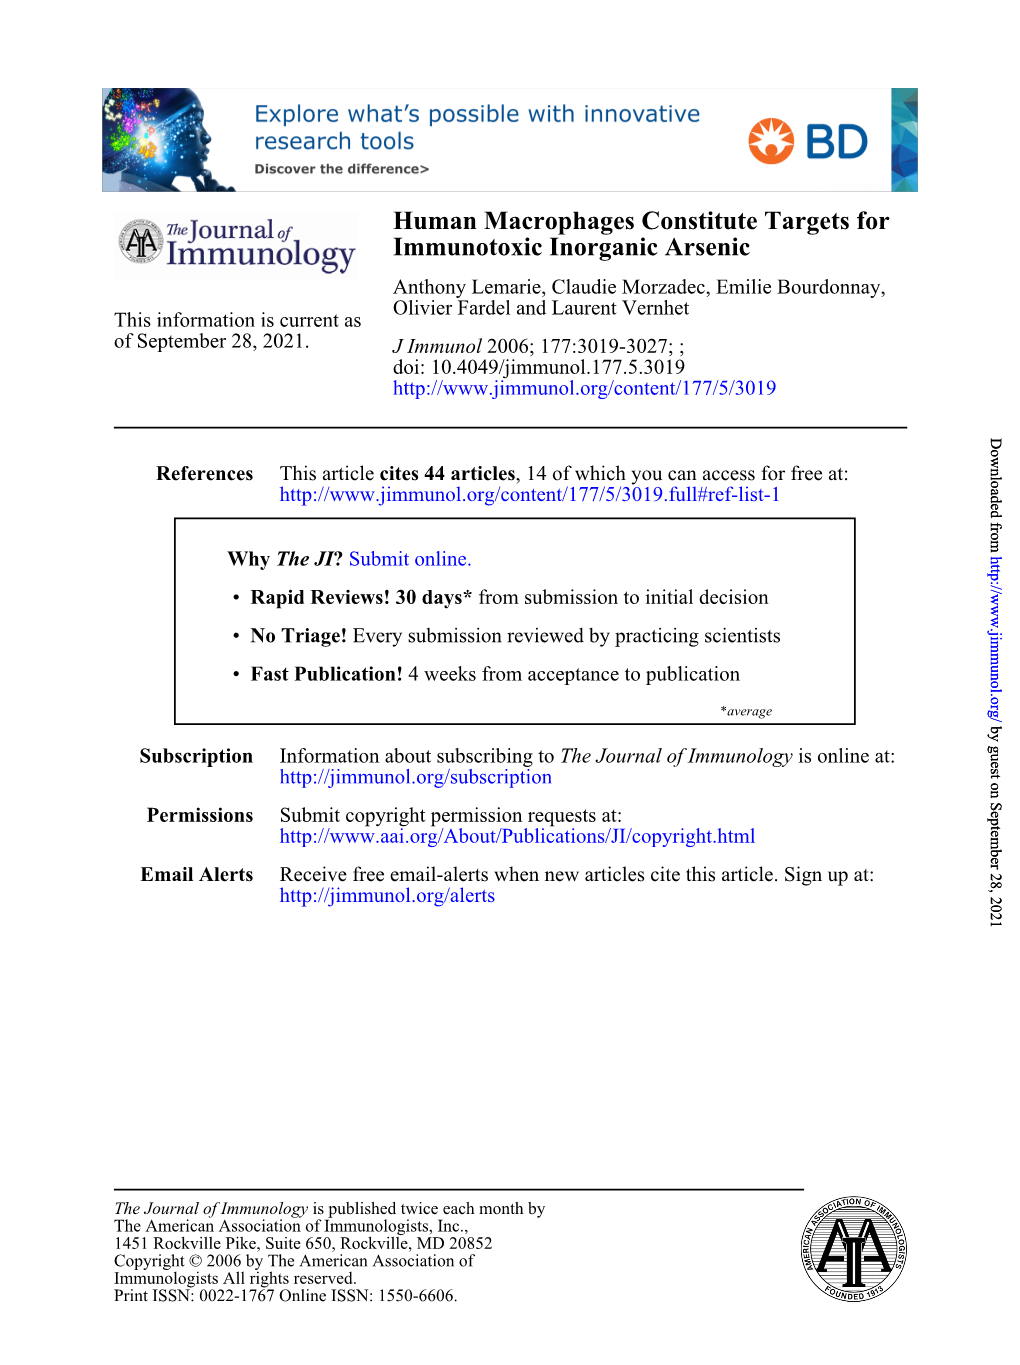 Immunotoxic Inorganic Arsenic Human Macrophages Constitute